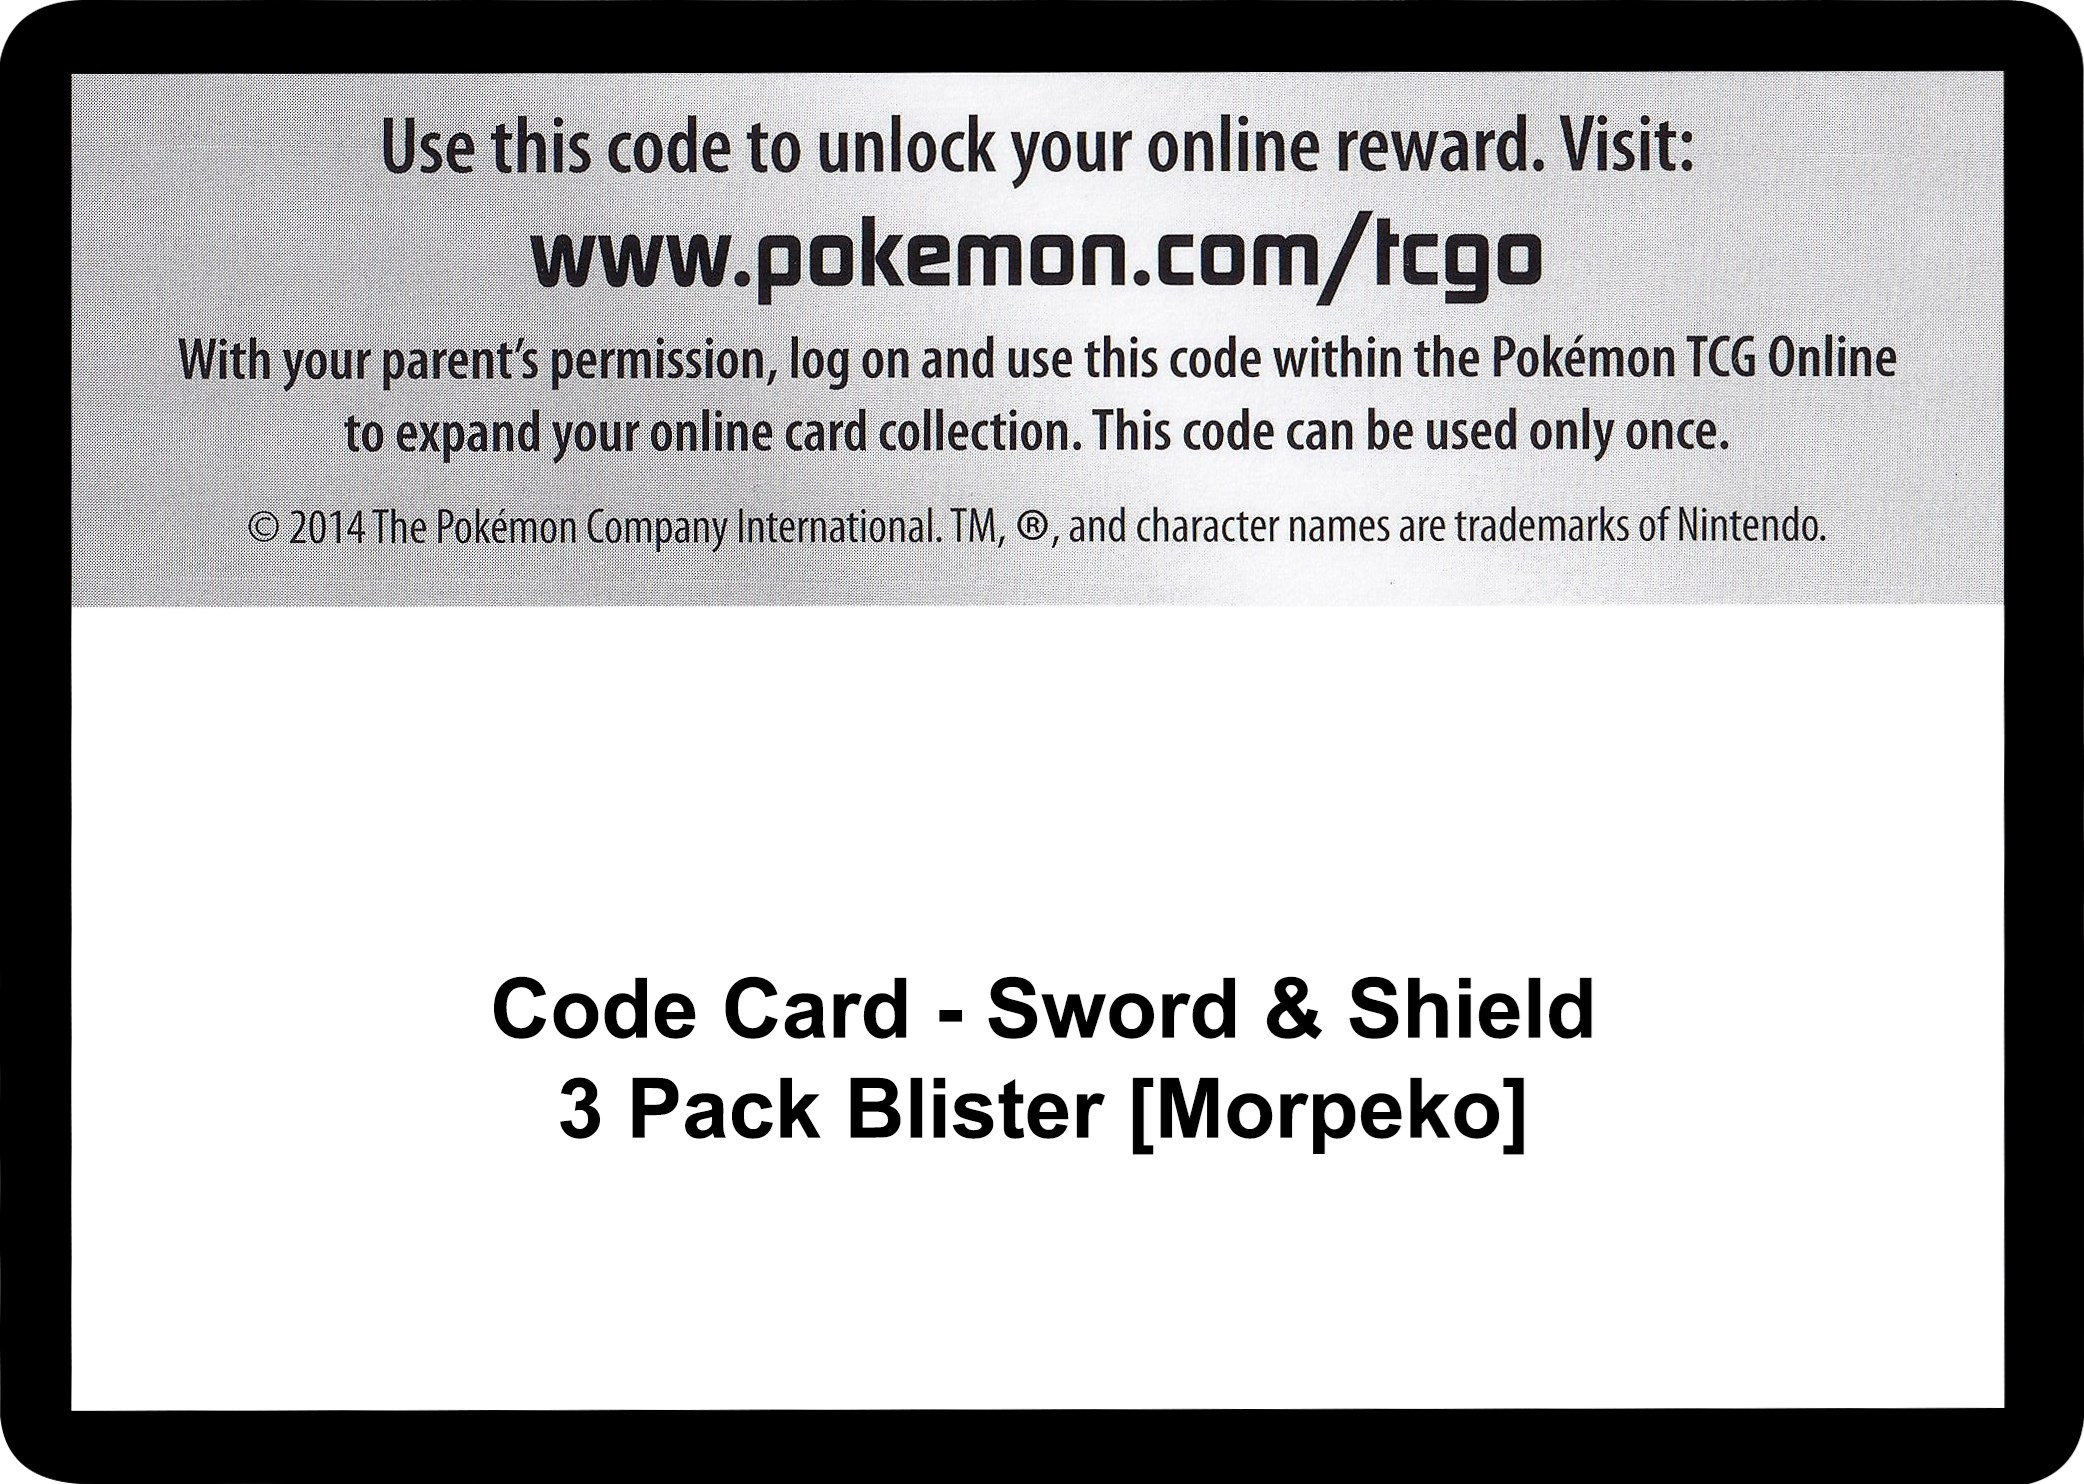 Sword & Shield 3 pack blister Morpeko 